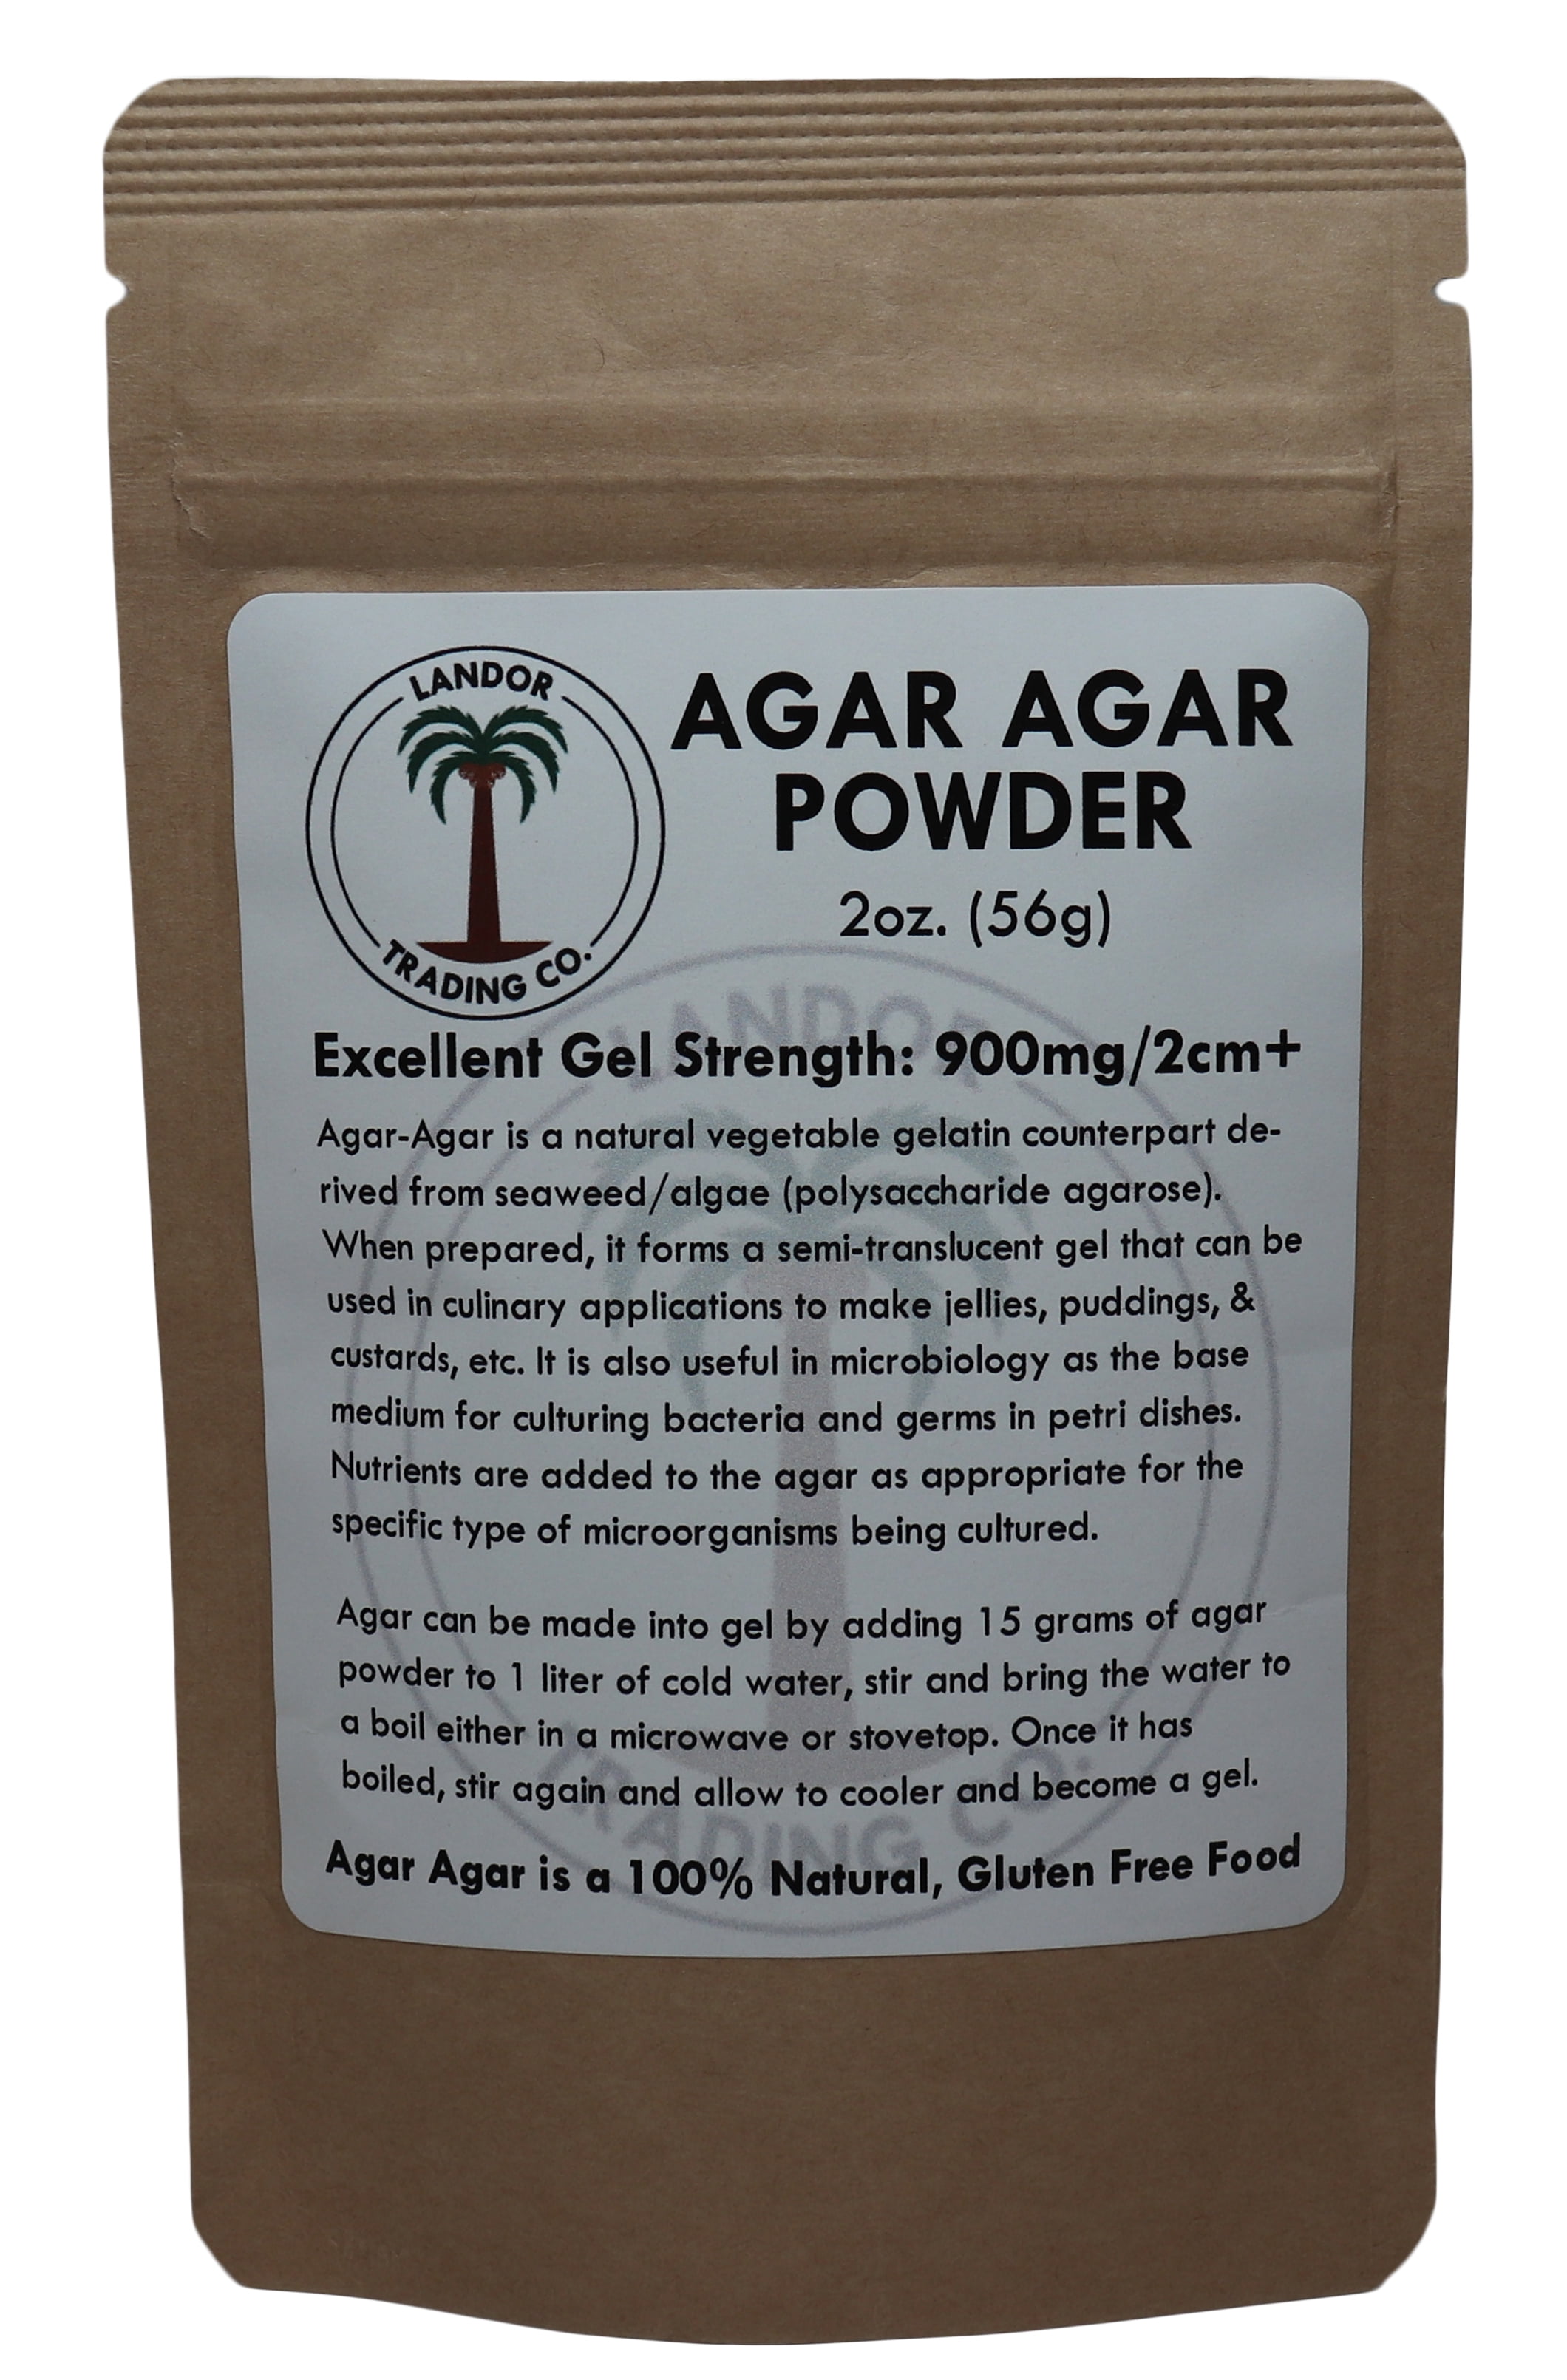 Agar Agar Powder 2oz - Excellent Gel Strength 900g/cm2